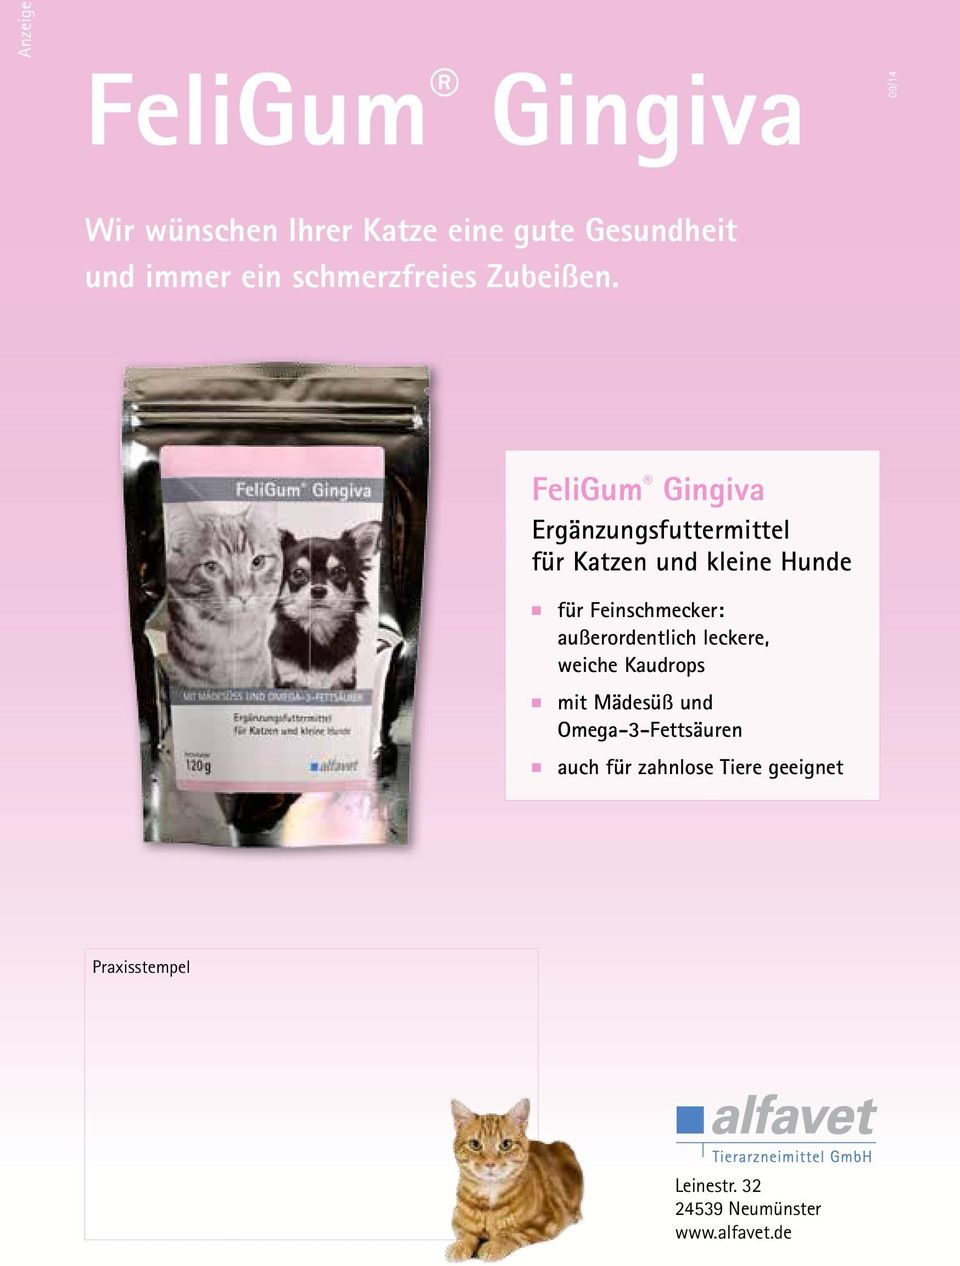 FeliGum Gingiva Ergänzungsfuttermittel für Katzen und kleine Hunde für Feinschmecker: